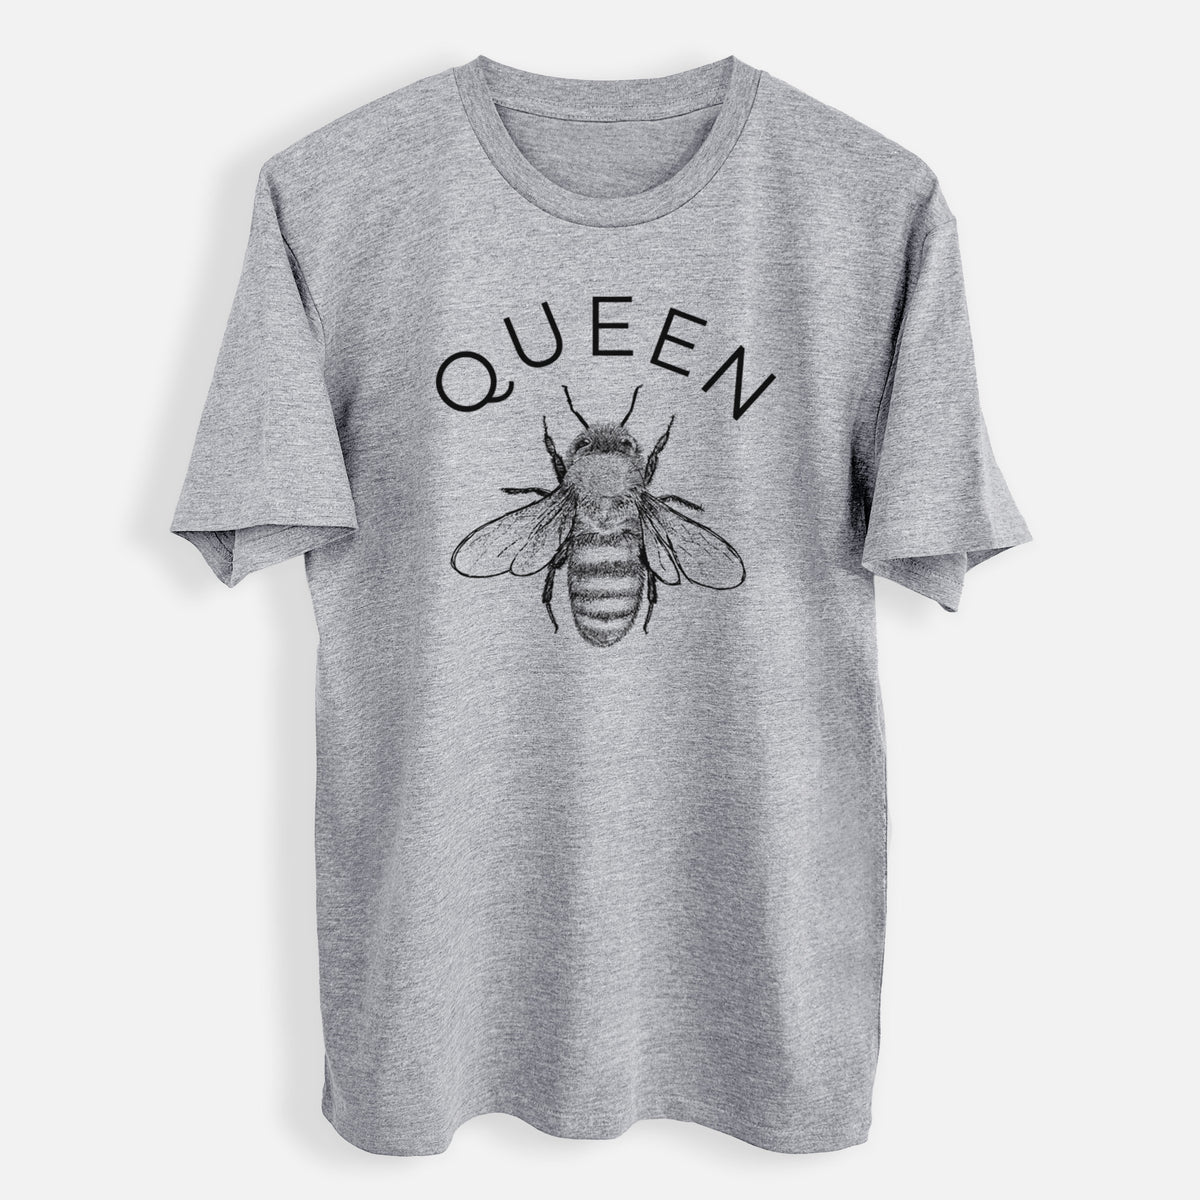 Queen Bee - Mens Everyday Staple Tee